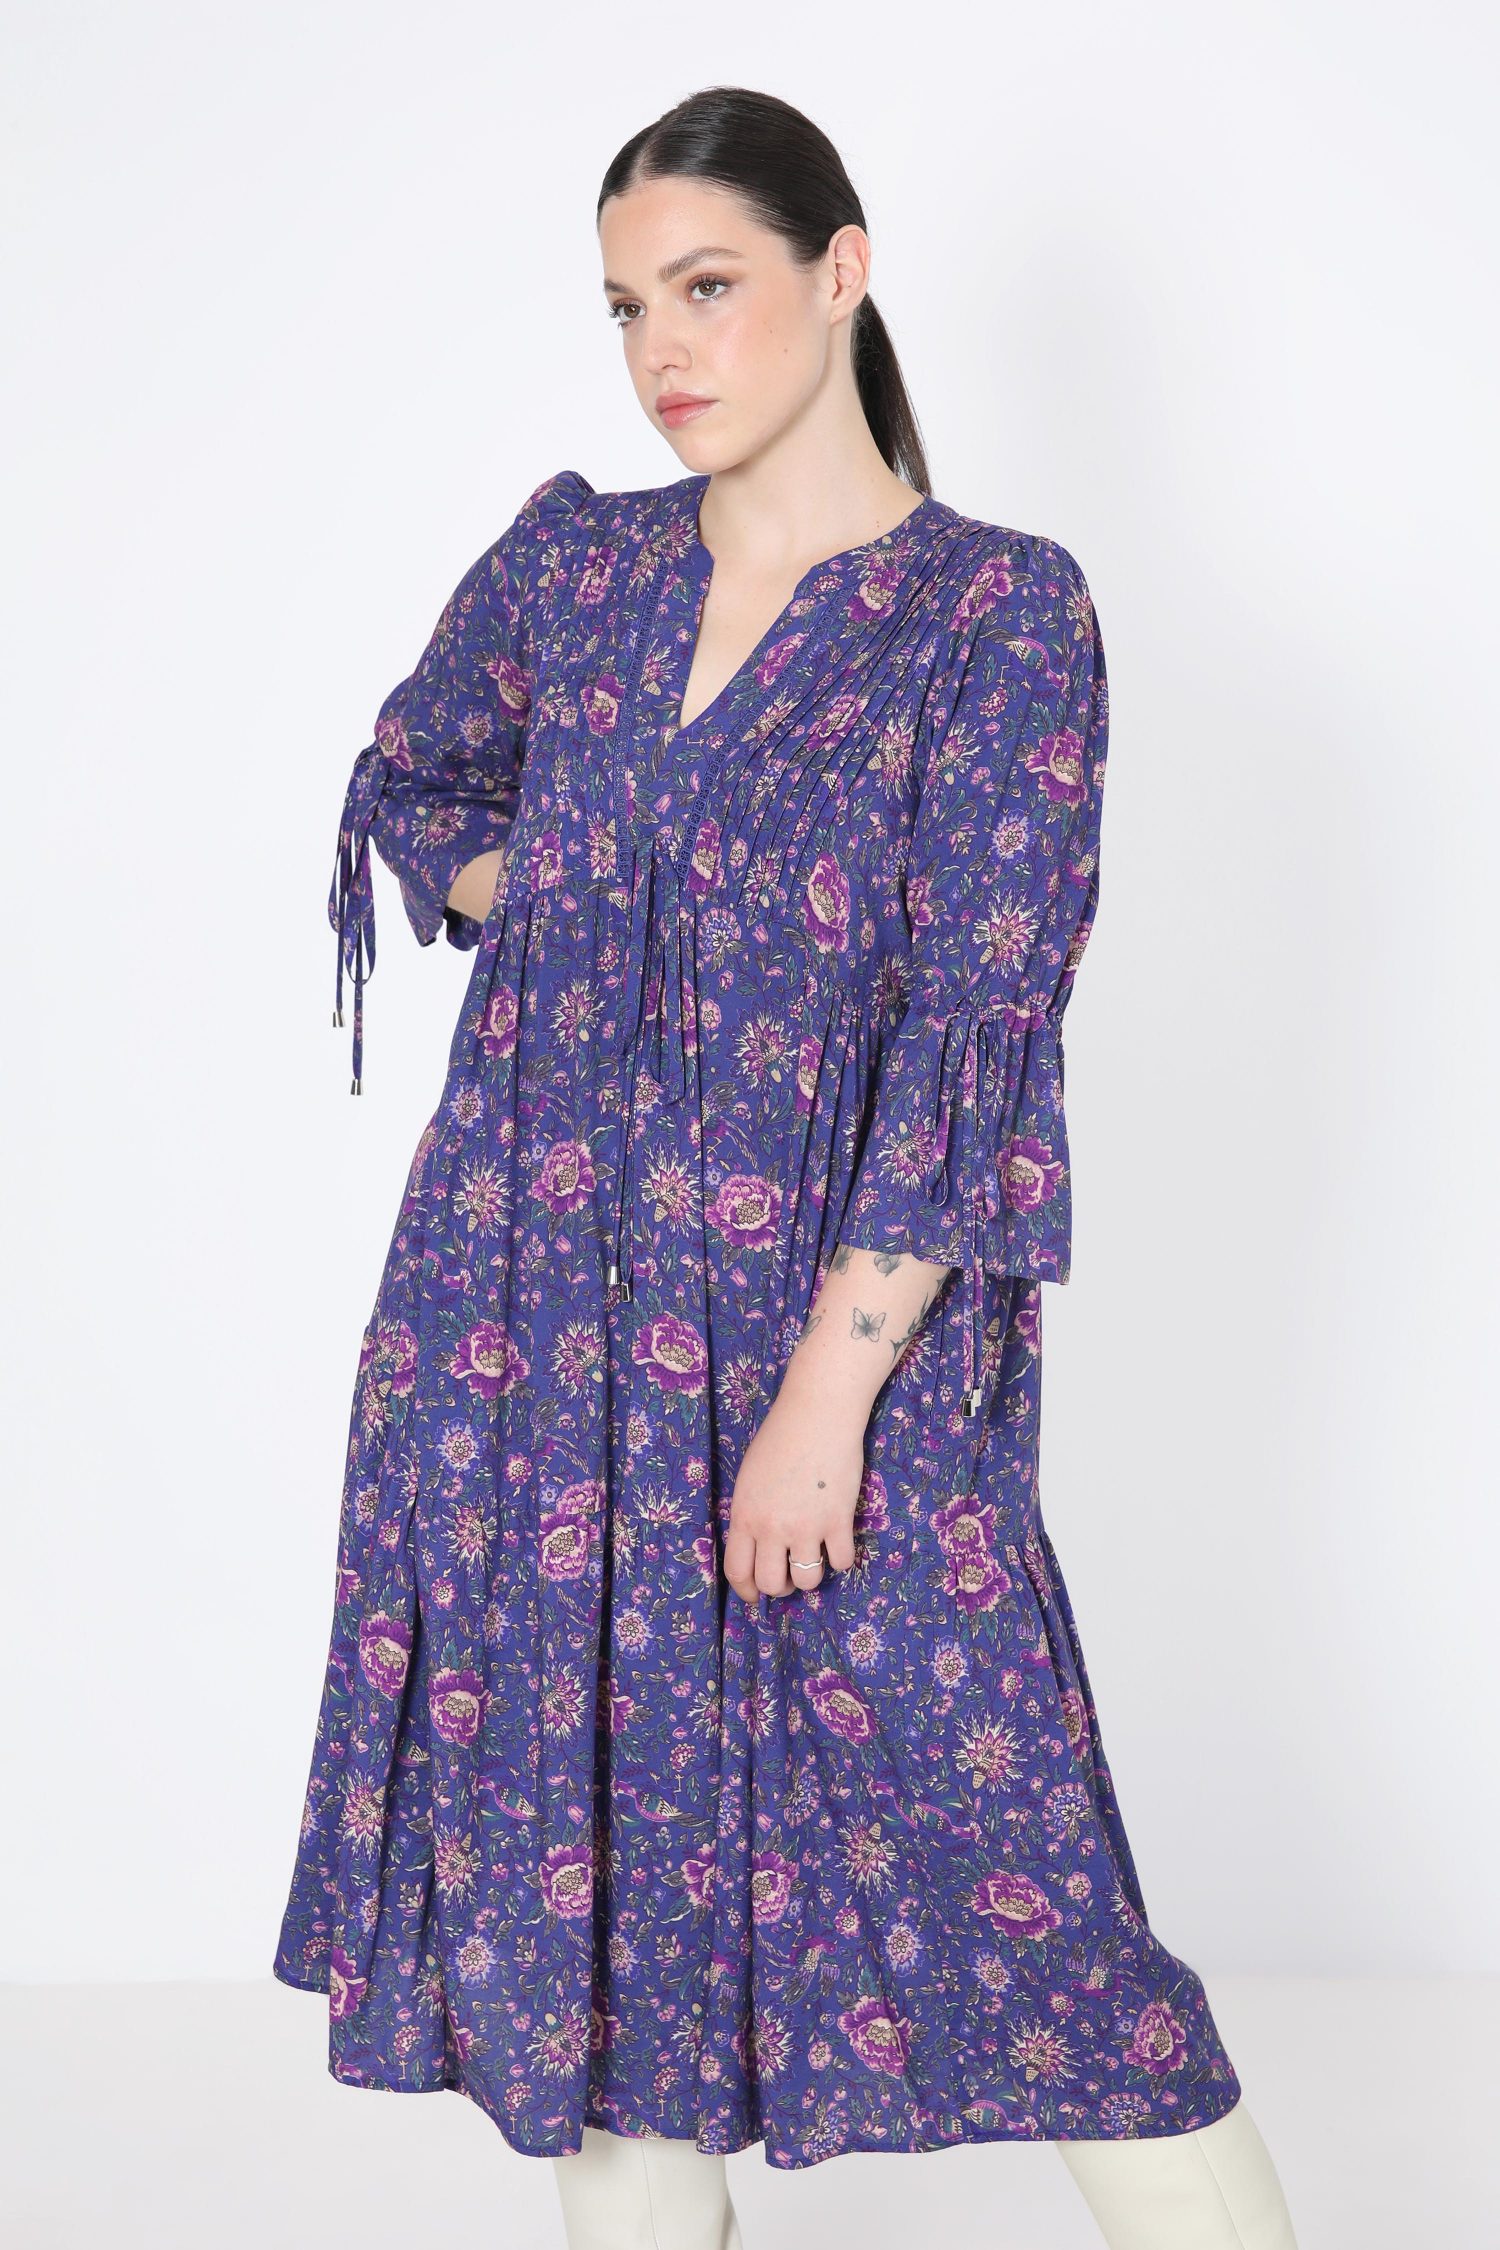 Floral print midi dress with bib